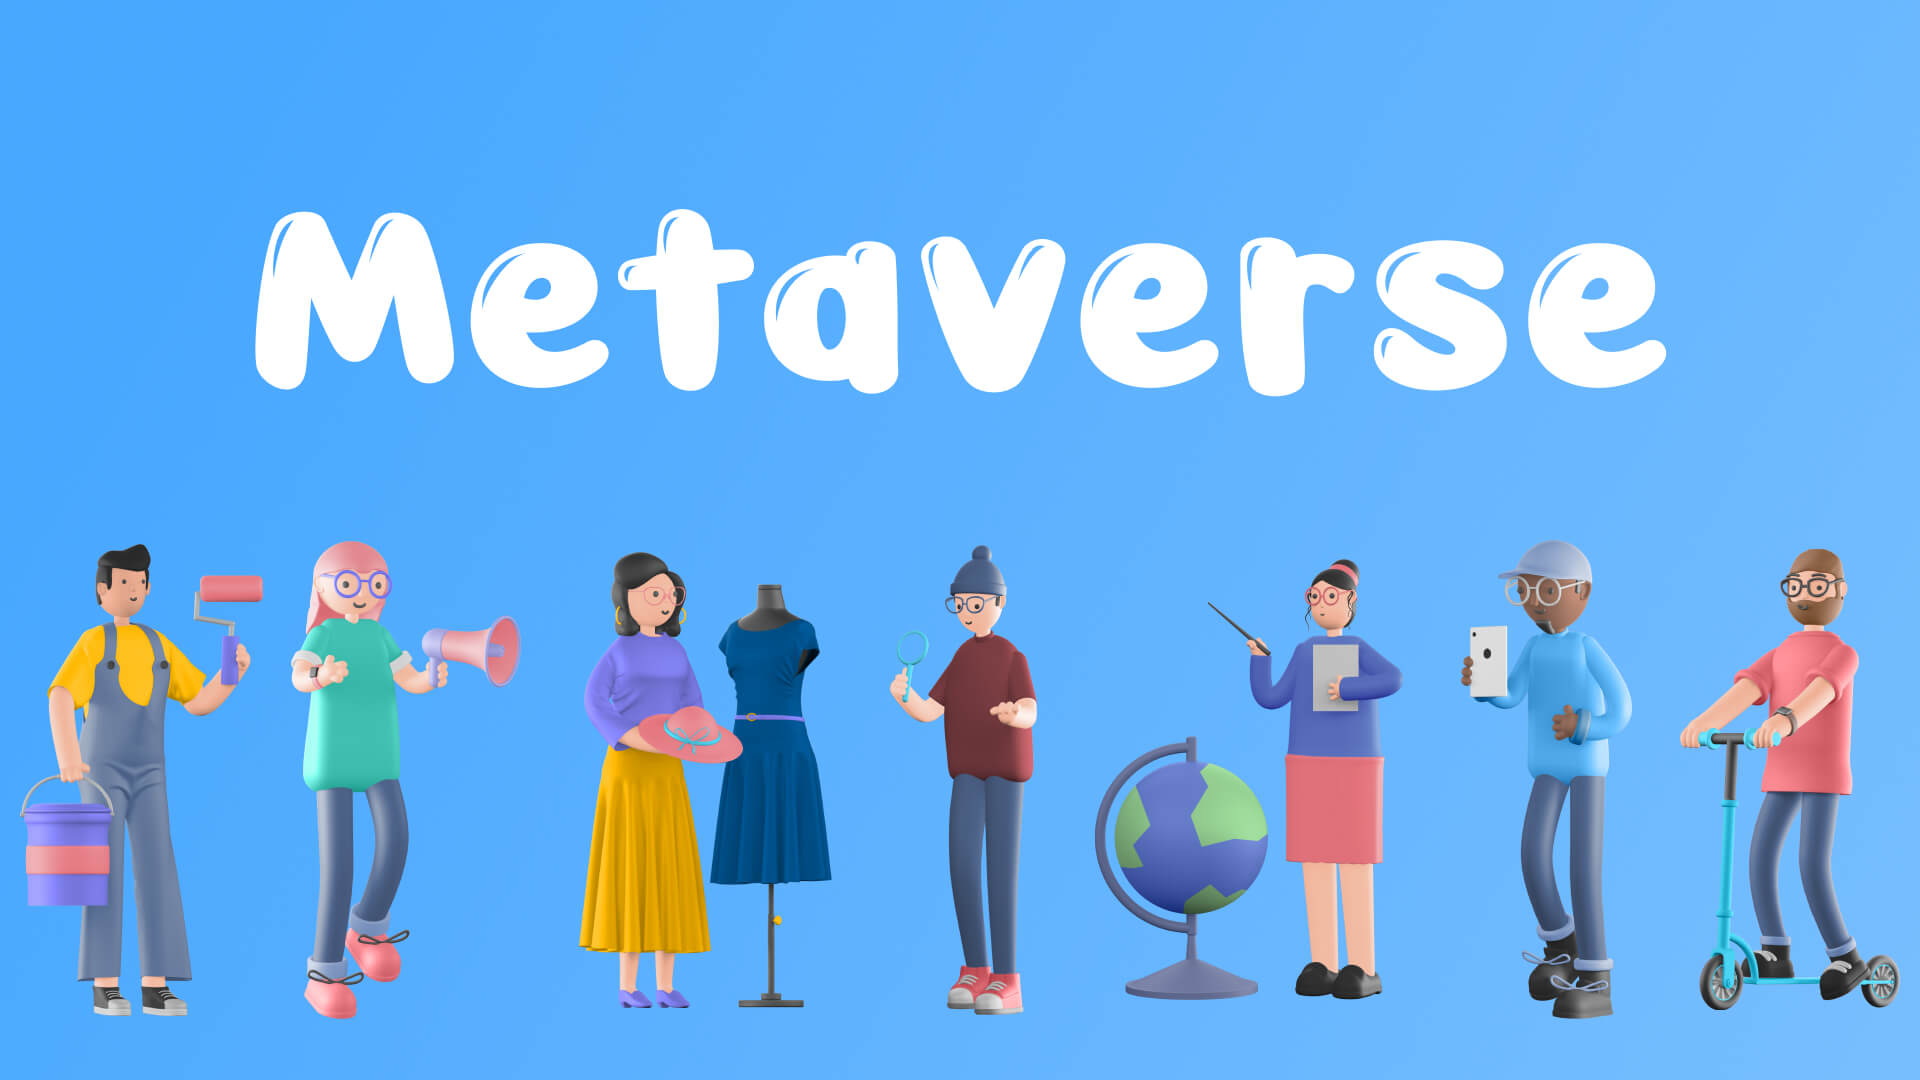 Afinal de contas, o que é o Metaverso? – SimpleAds